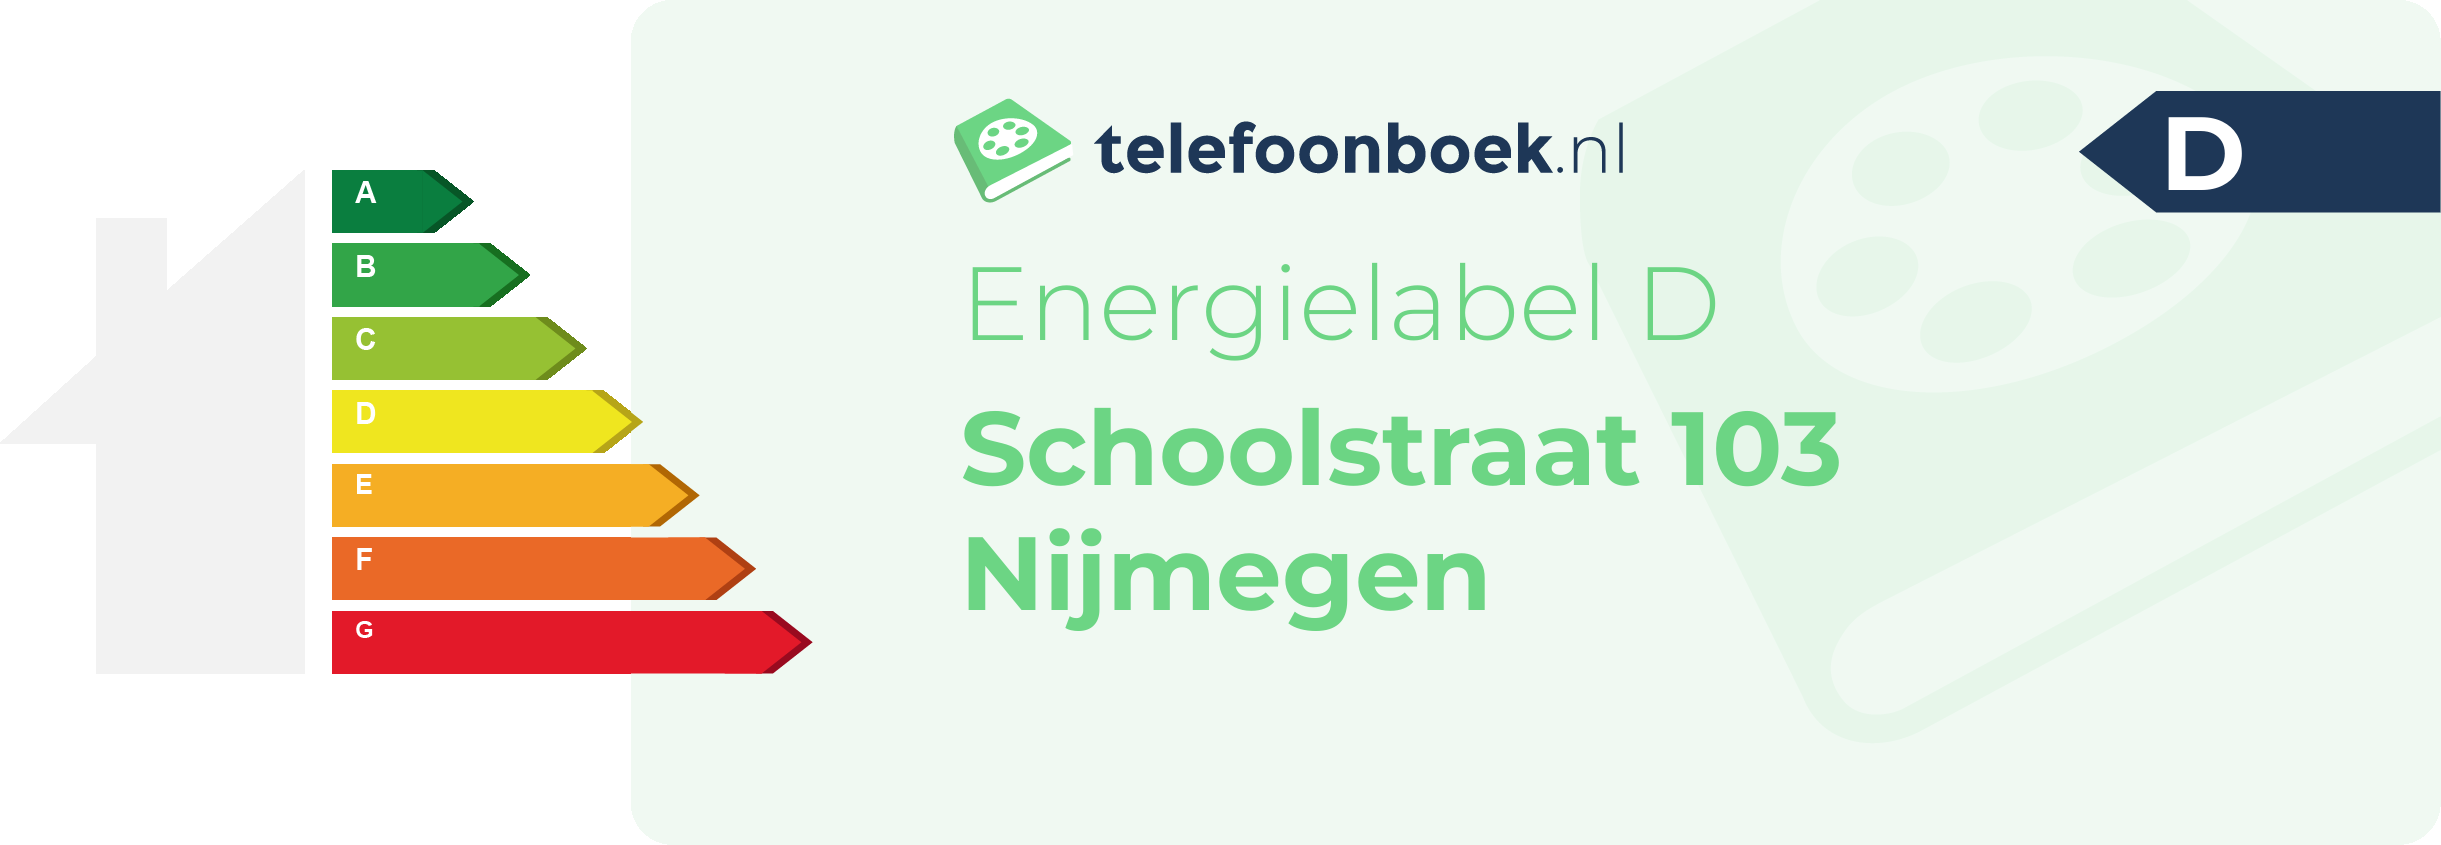 Energielabel Schoolstraat 103 Nijmegen